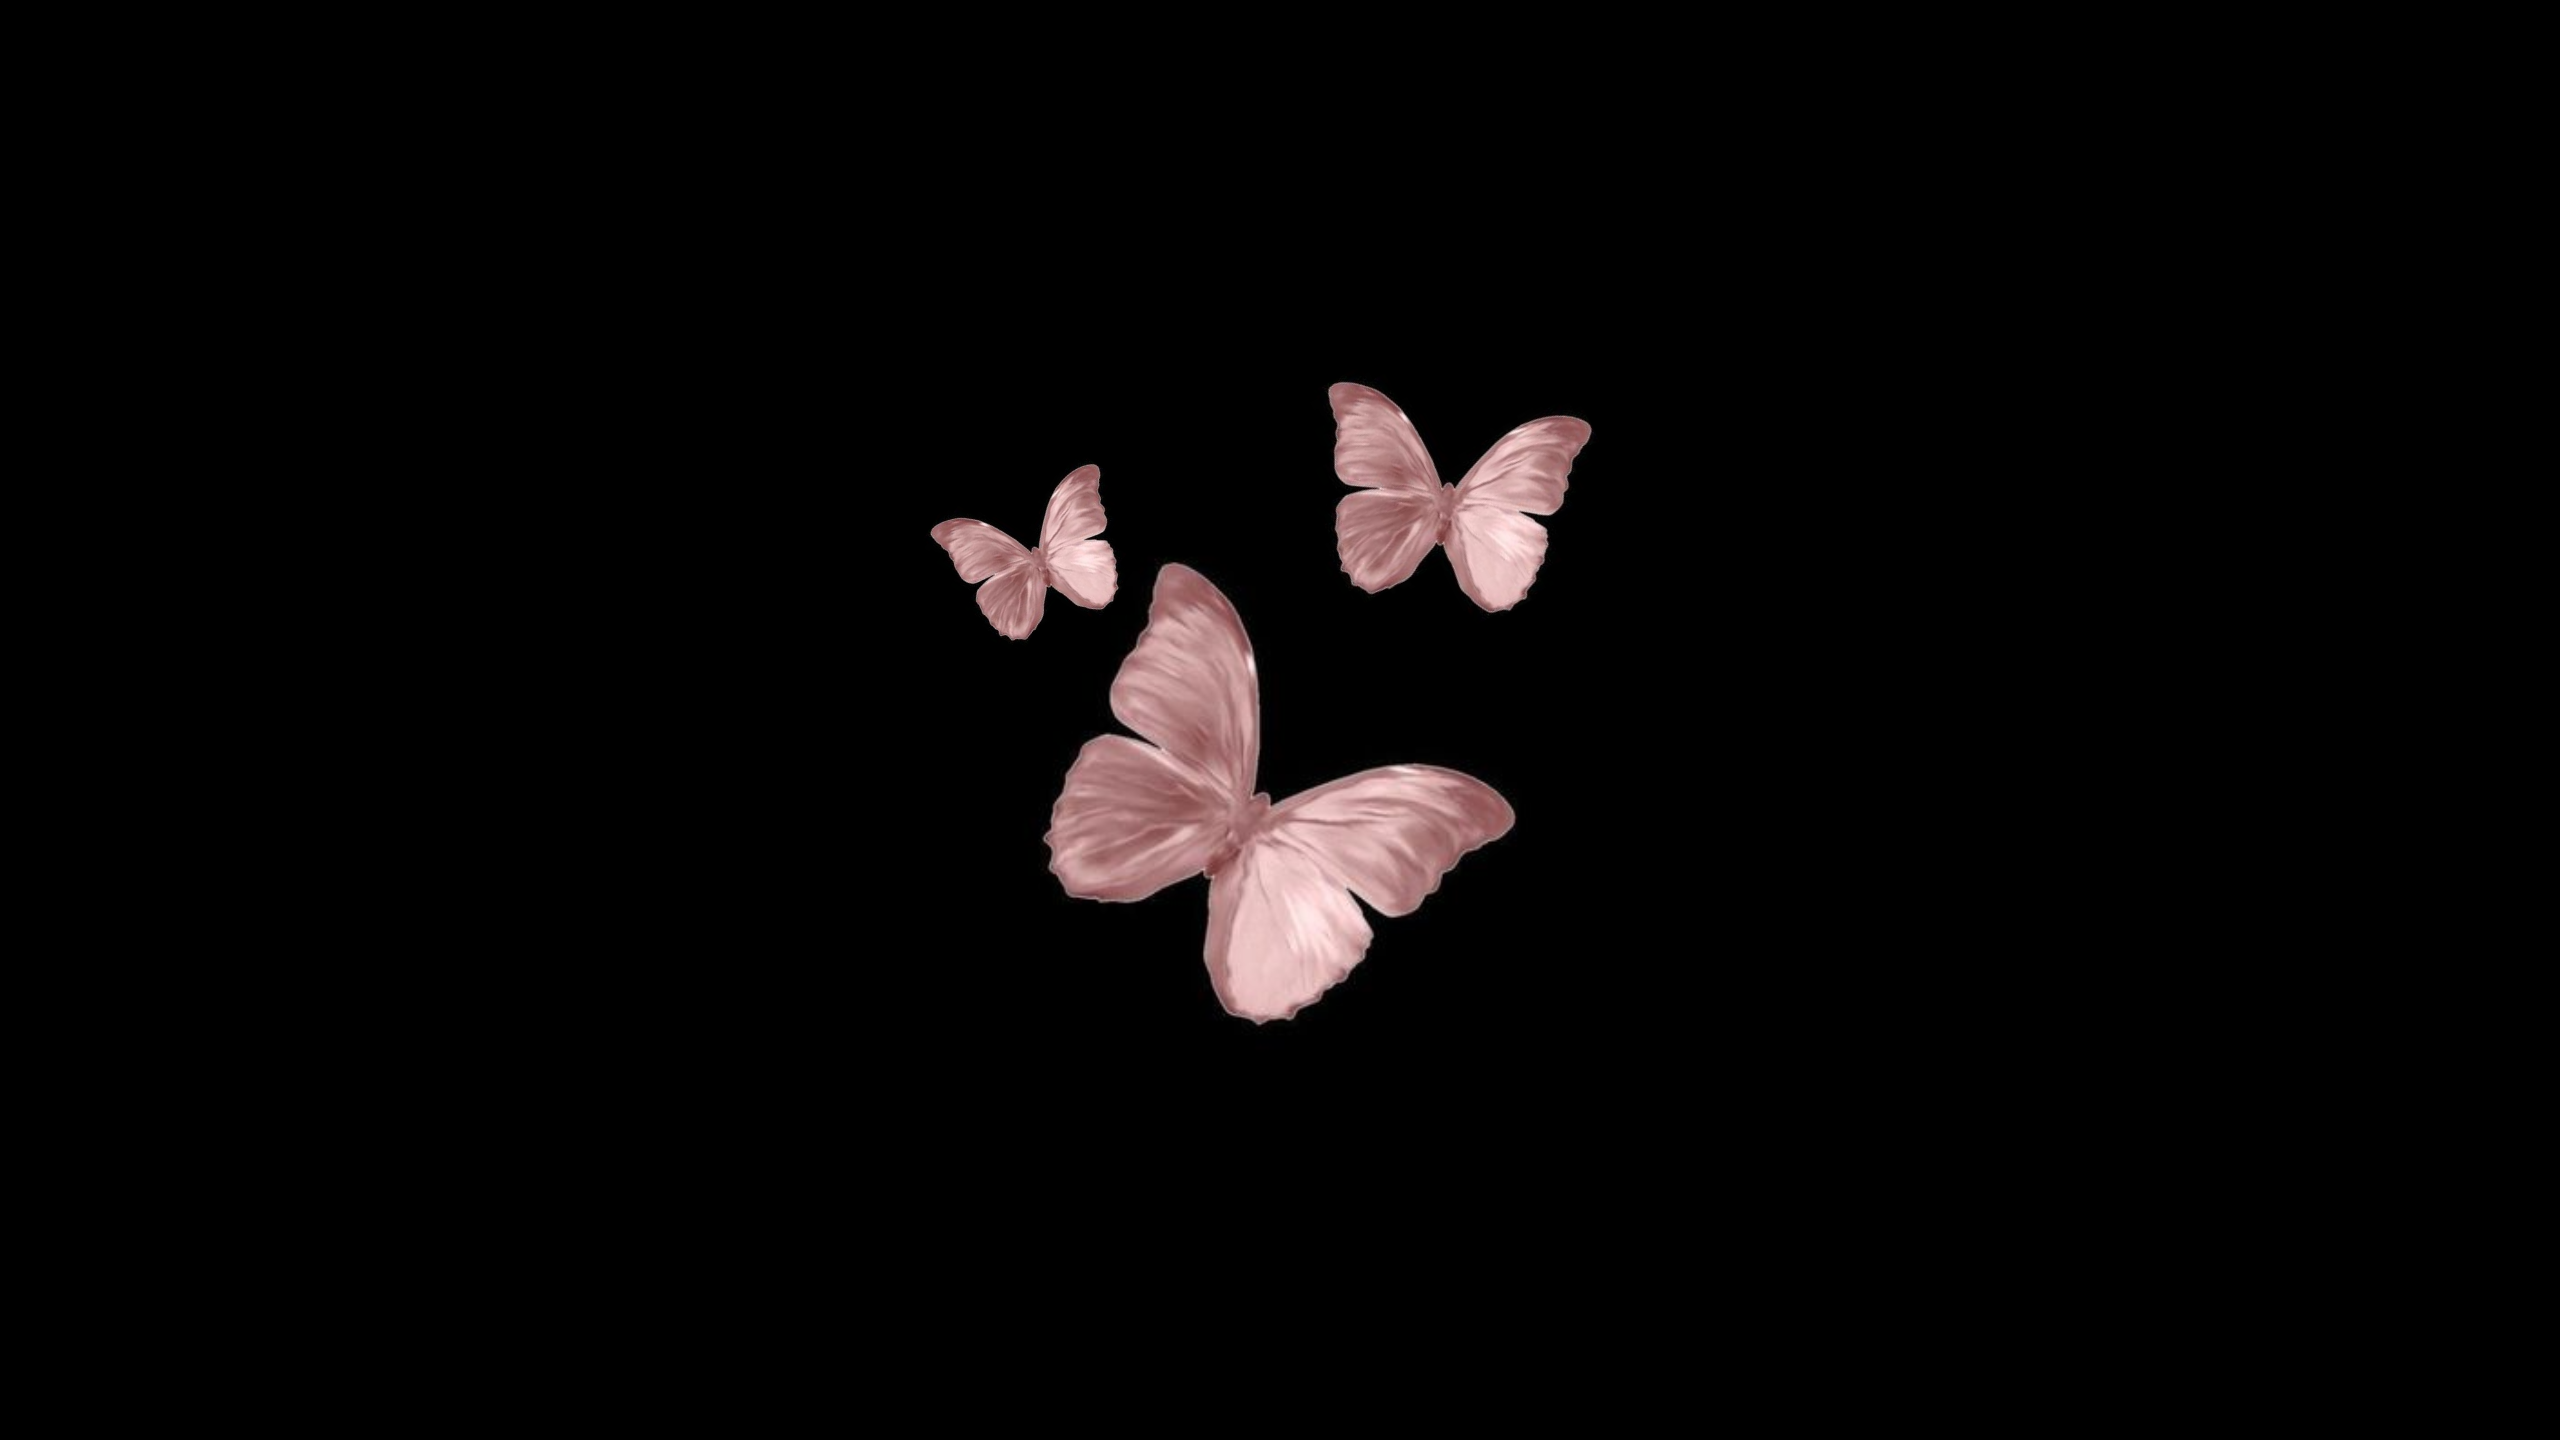 Butterfly Laptop Wallpaper Background. Papel De Parede Celular Fofo Desenho, Papeis De Parede Delicados, Papel De Parede Celular Fofo